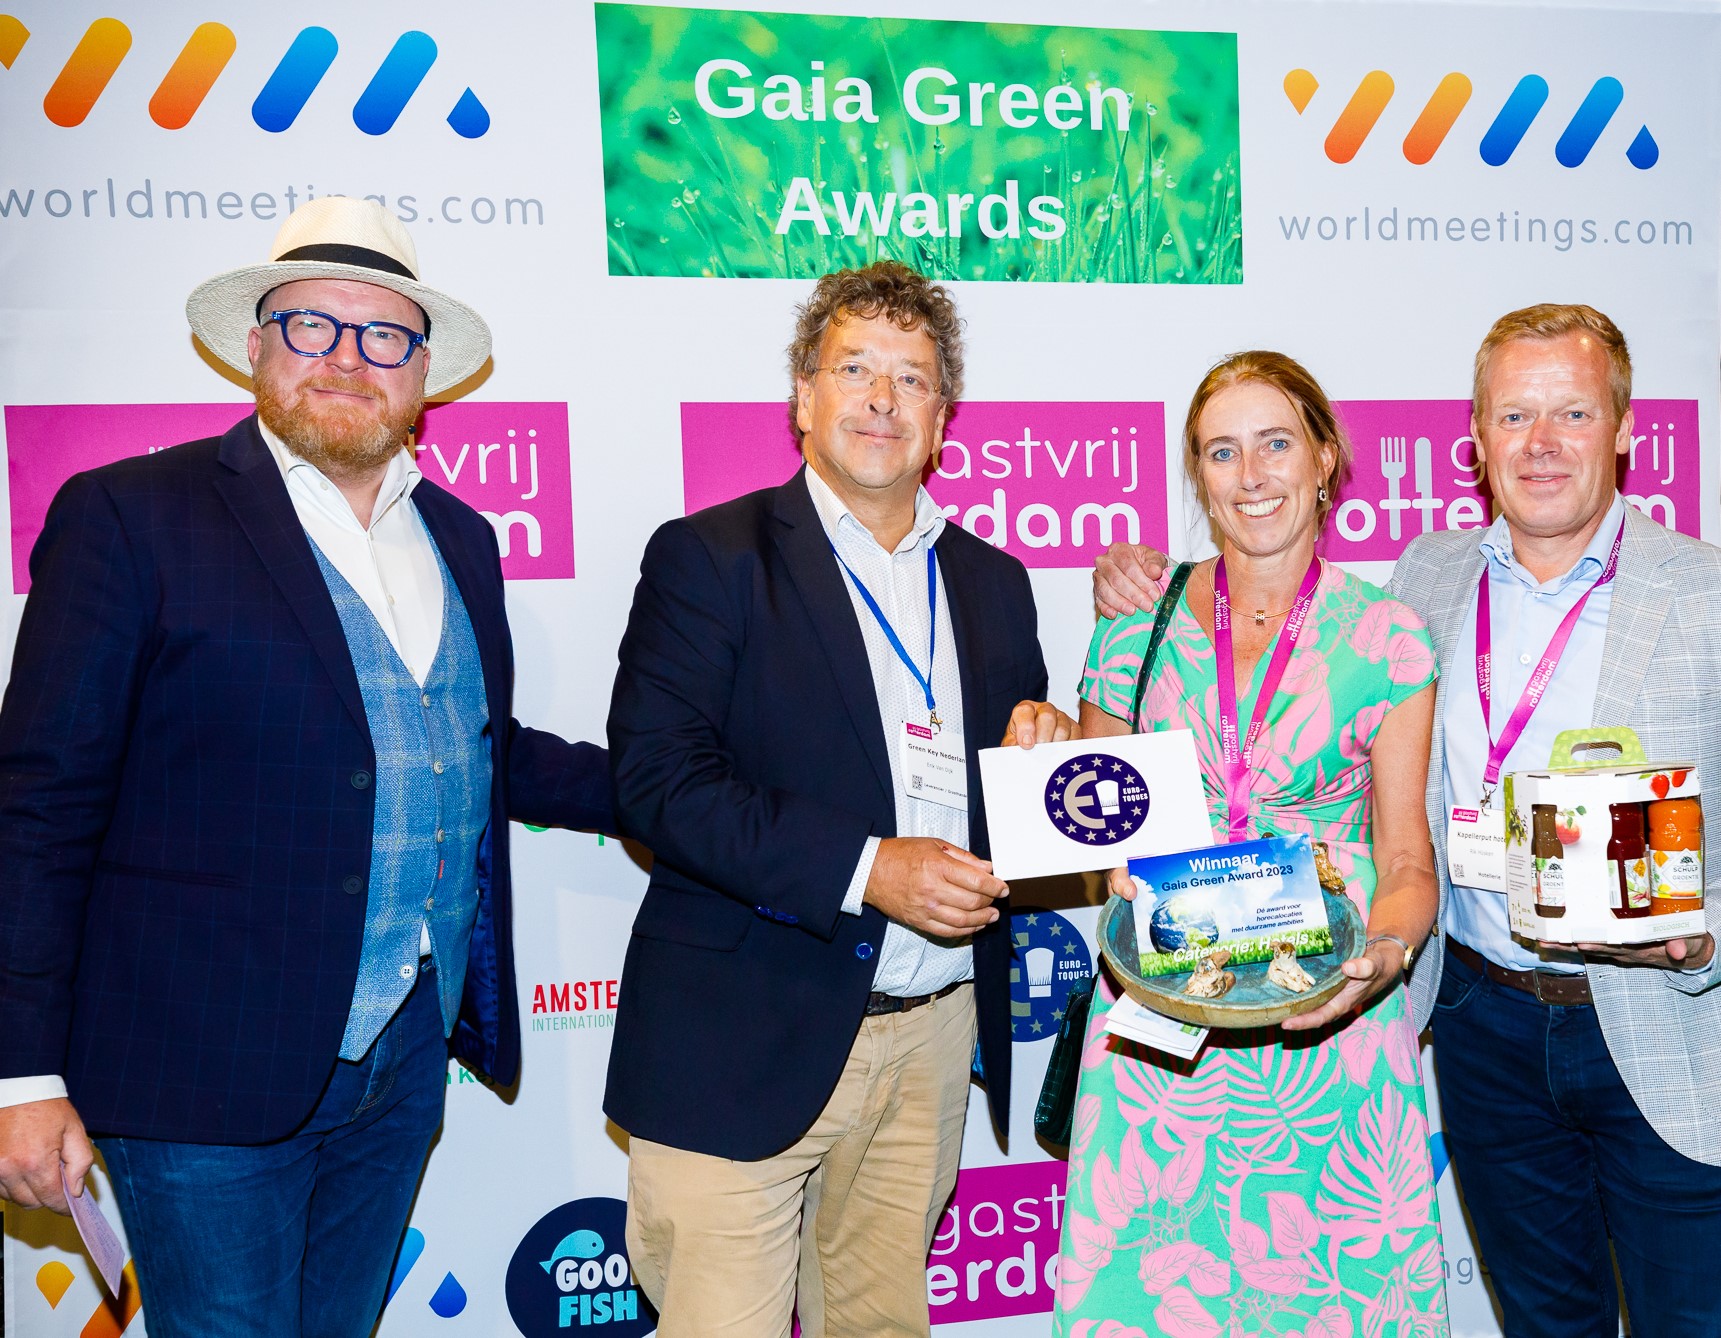 Winnaars Gaia Green Awards bekendgemaakt op Gastvrij Rotterdam